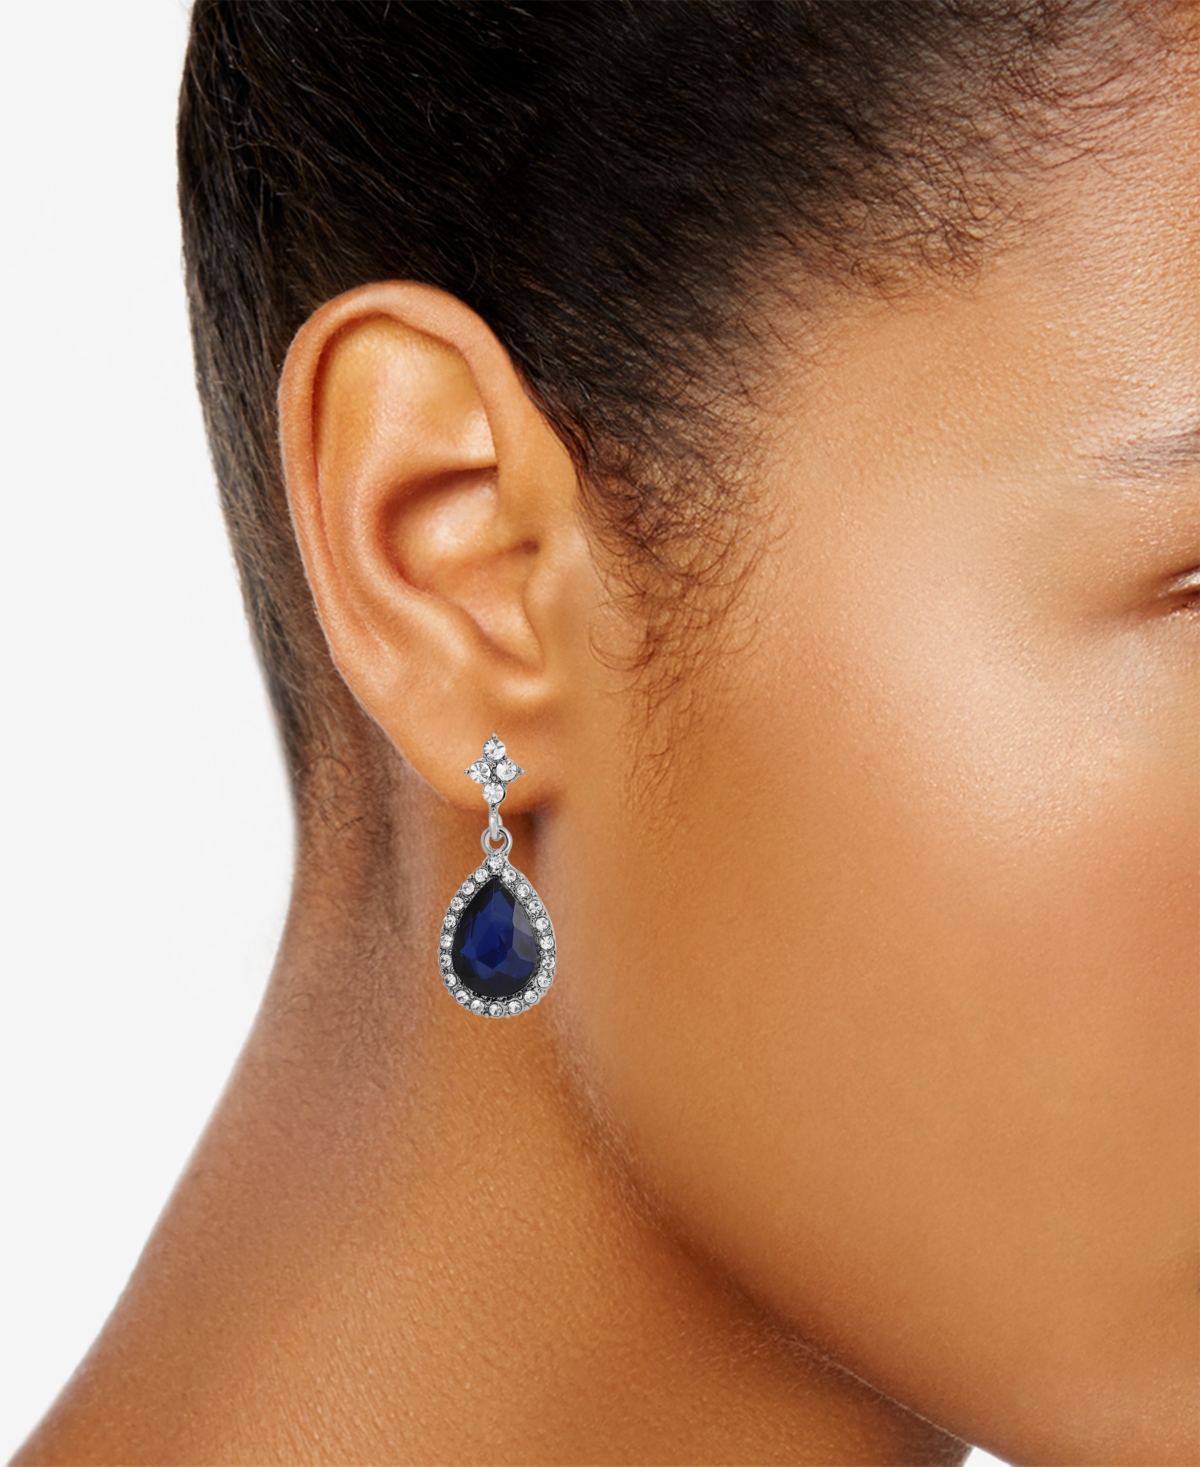 Shop 2028 Silver-tone Blue Crystal Drop Earrings